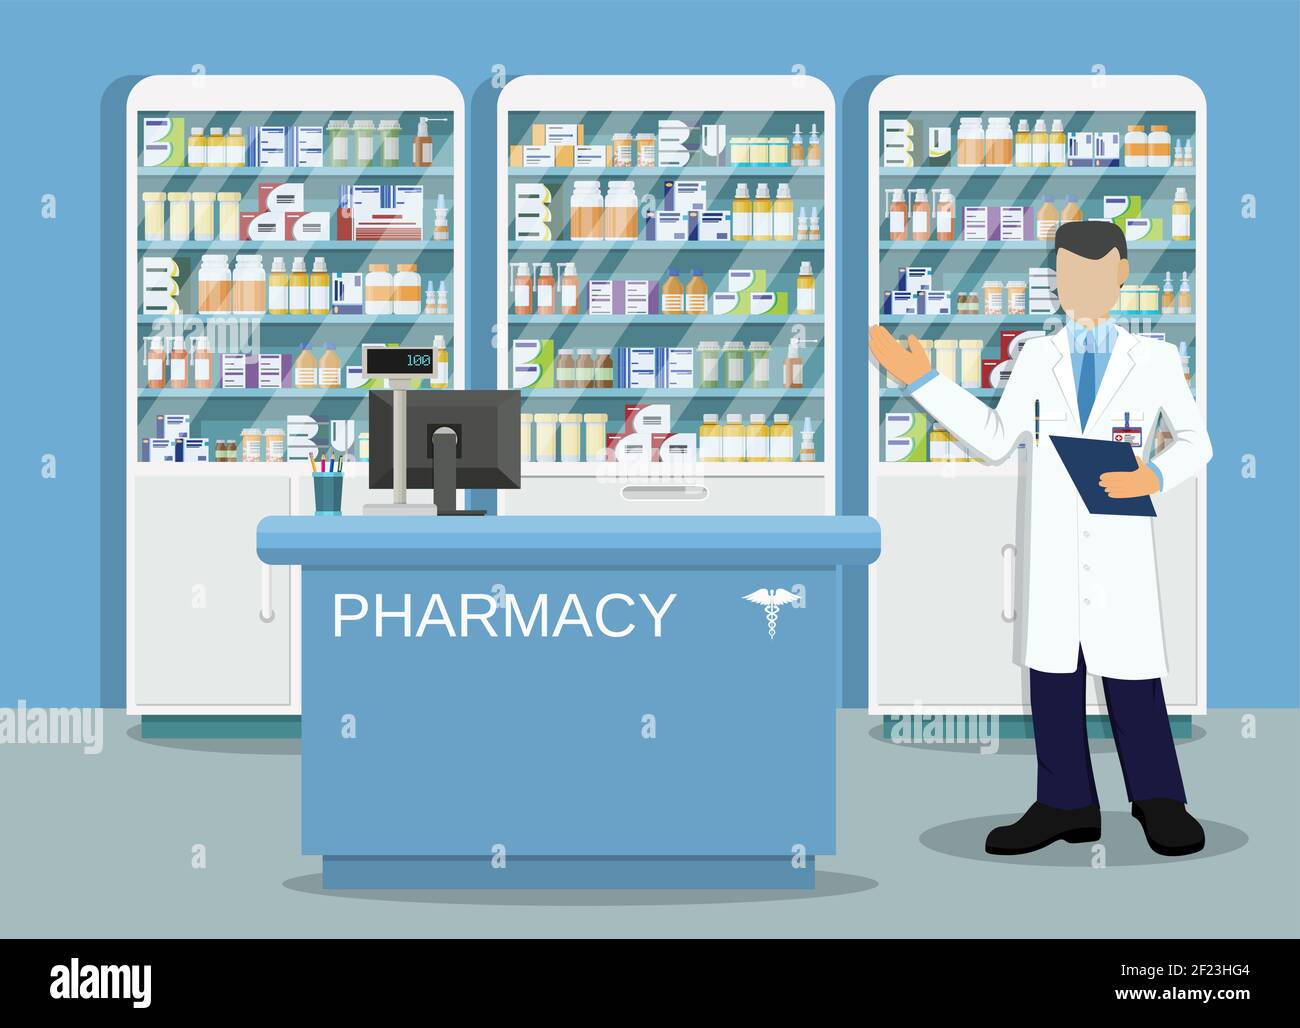 Modern interior pharmacy or drugstore Stock Vector Image & Art - Alamy